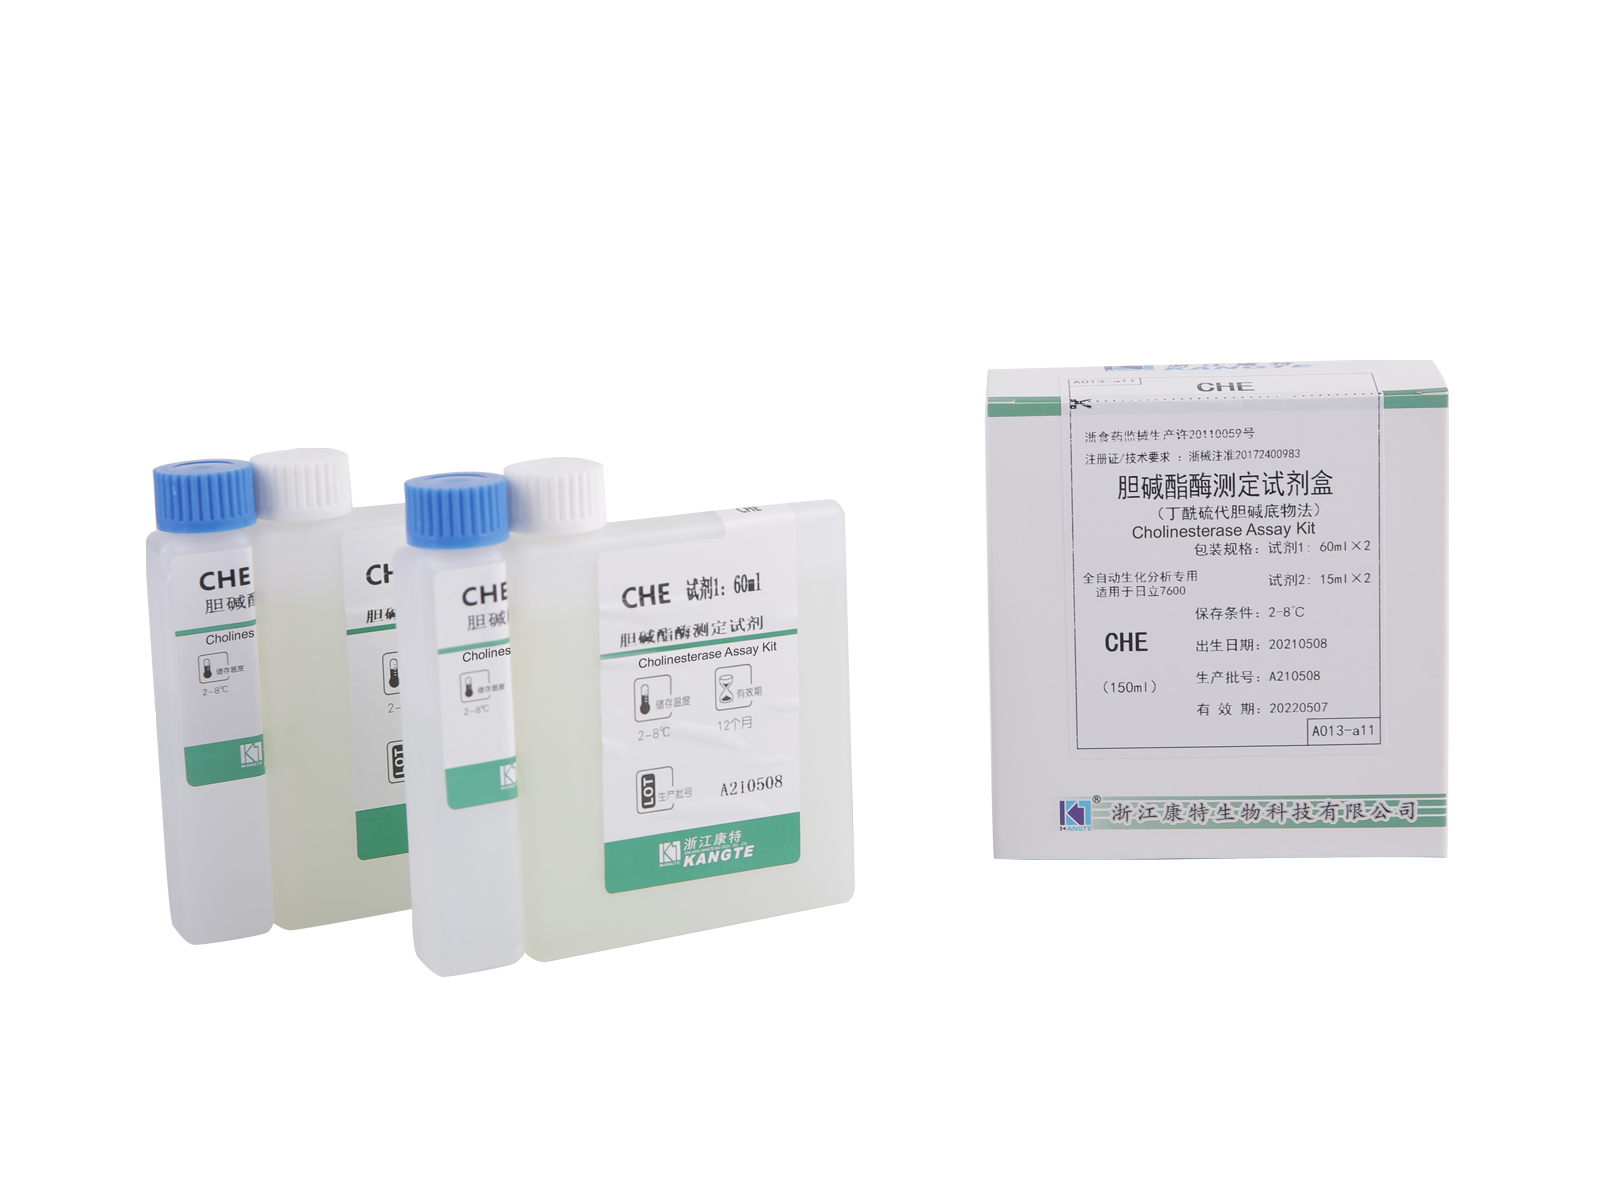 【CHE】Kit per il test della colinesterasi (metodo con substrato di butirriltiocolina)